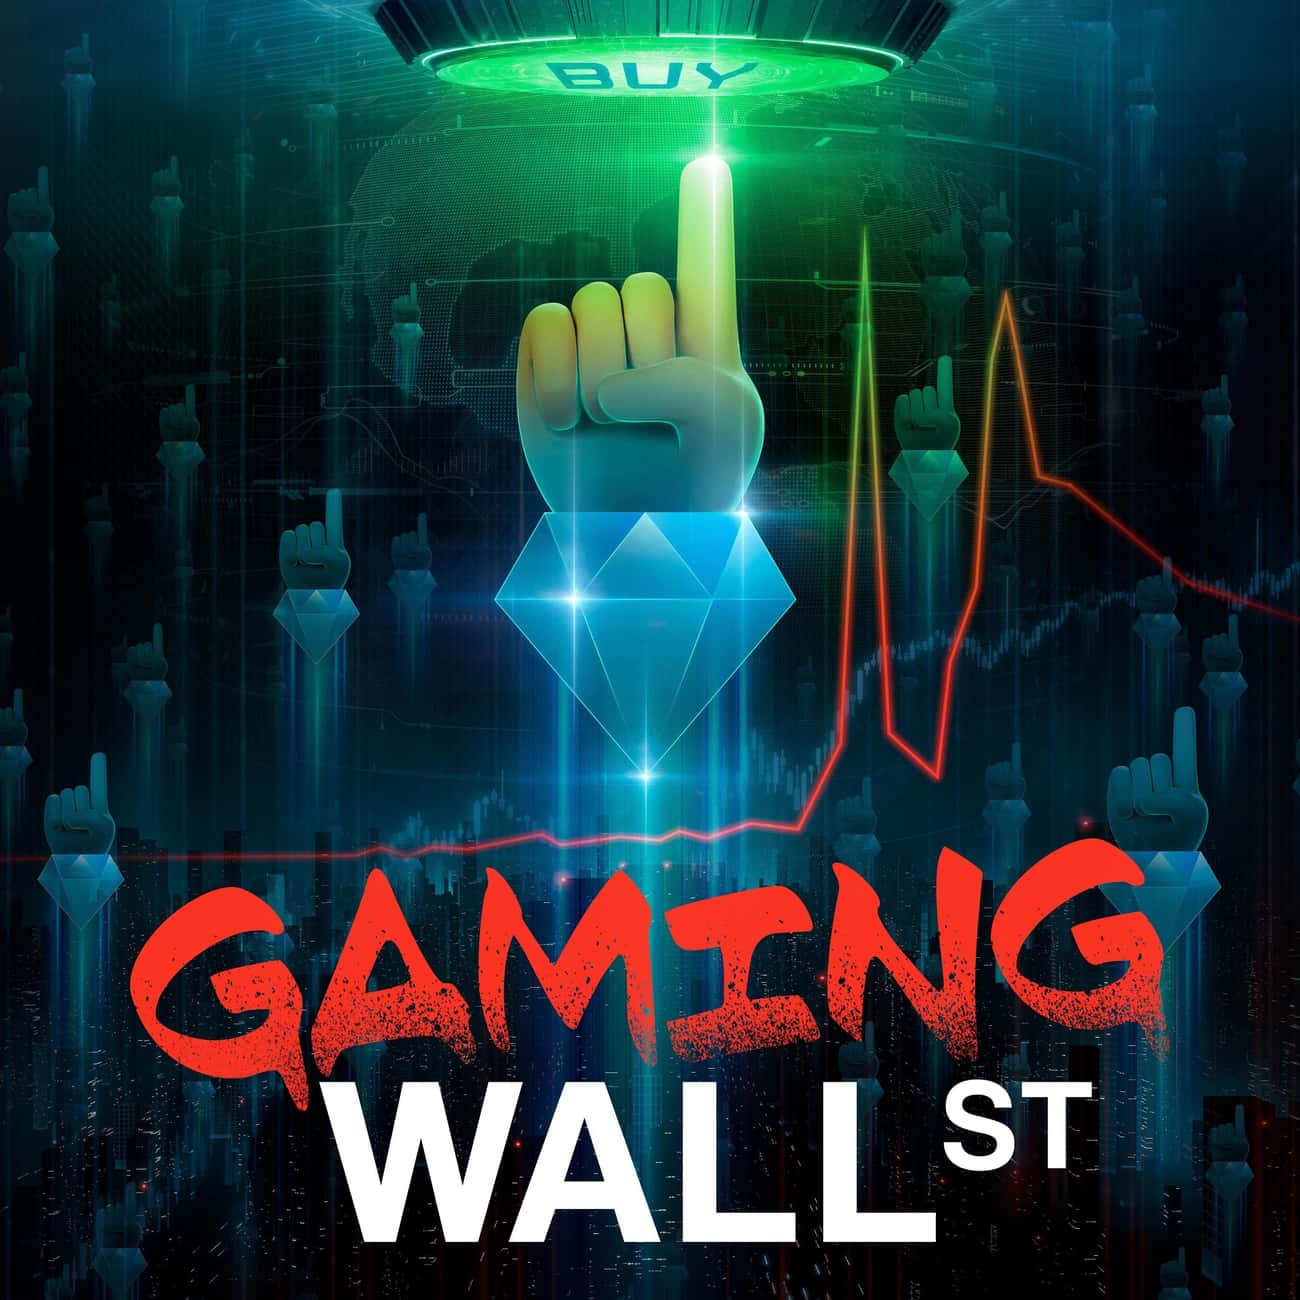 Gaming Wall Street